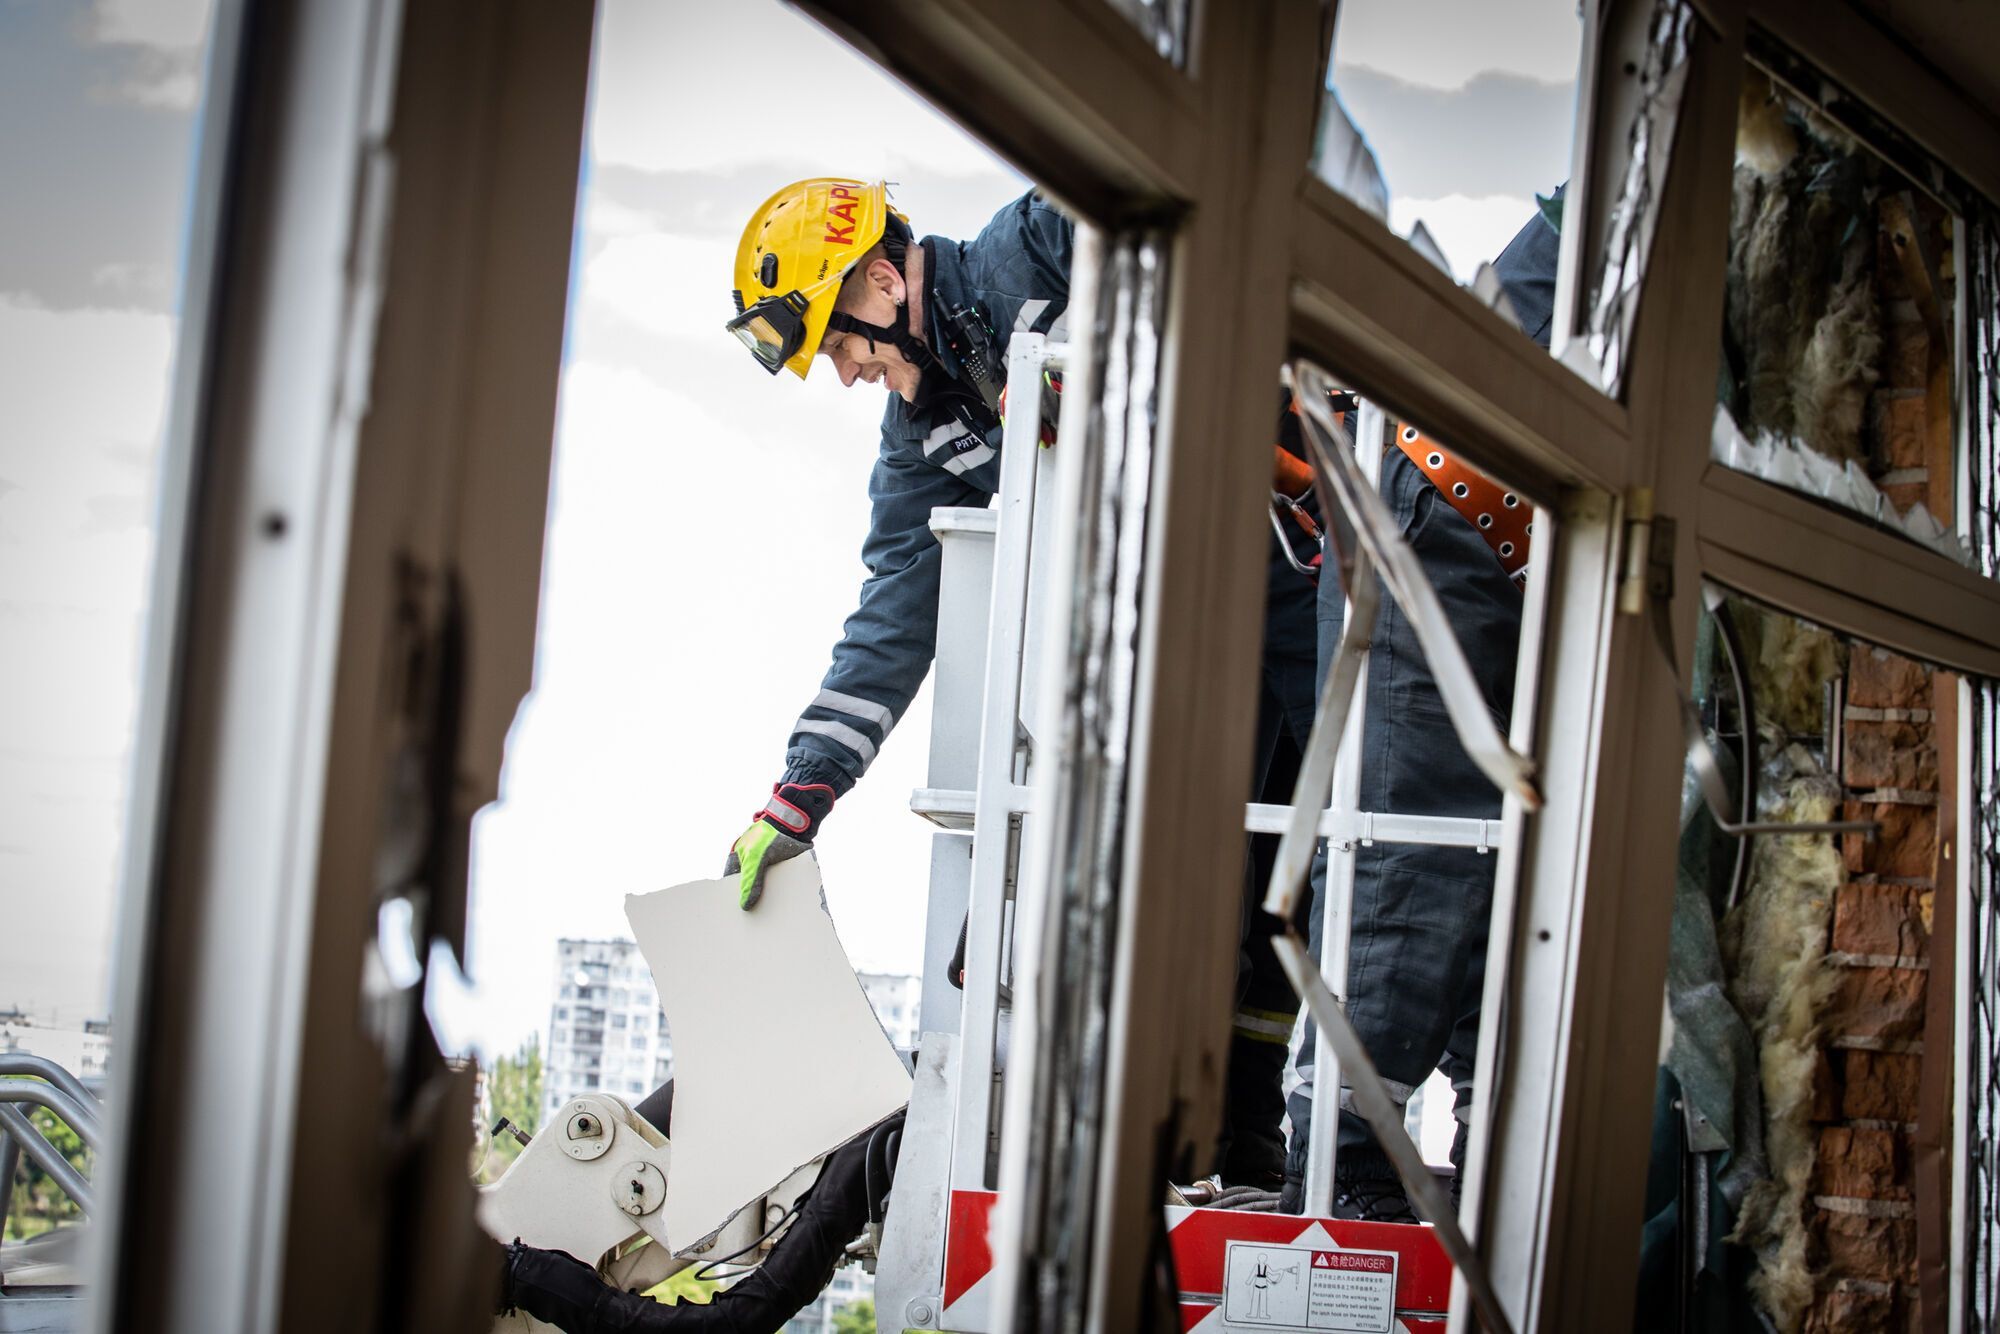 Спасатели завершили разбор аварийных конструкций многоэтажки в Киеве: на очереди восстановление дома. Фото